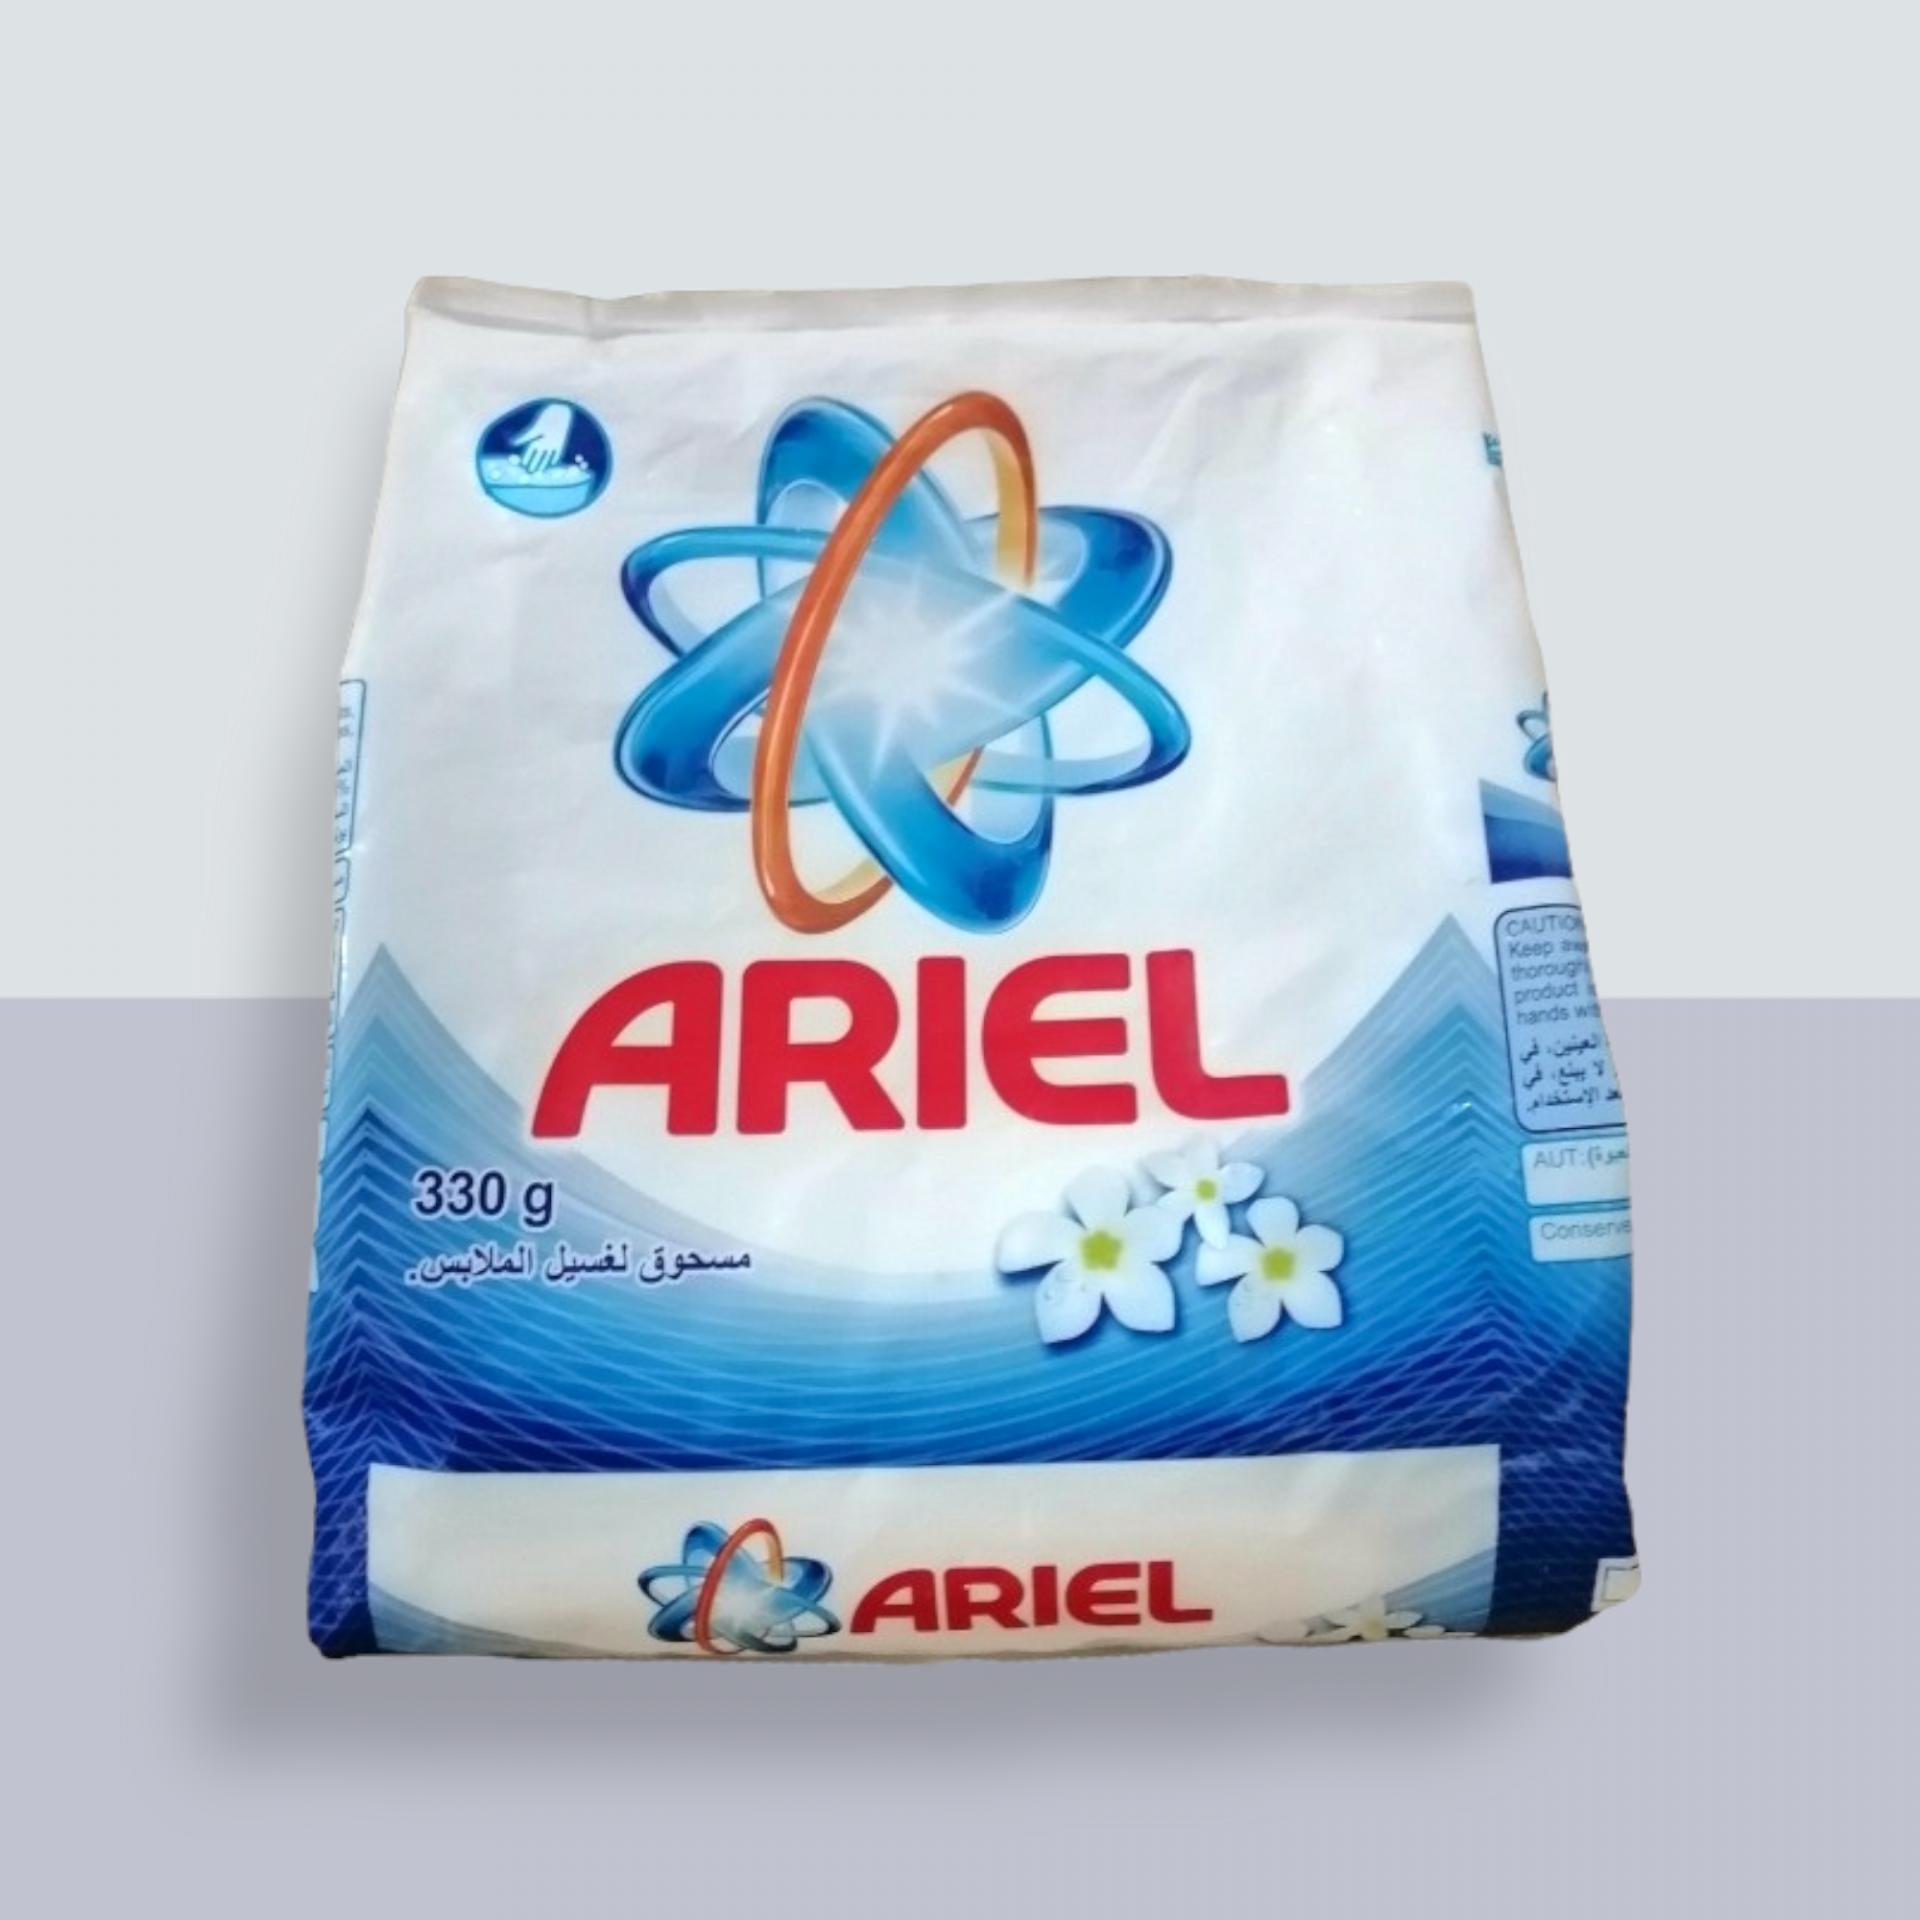 Detergente ARIEL  330g